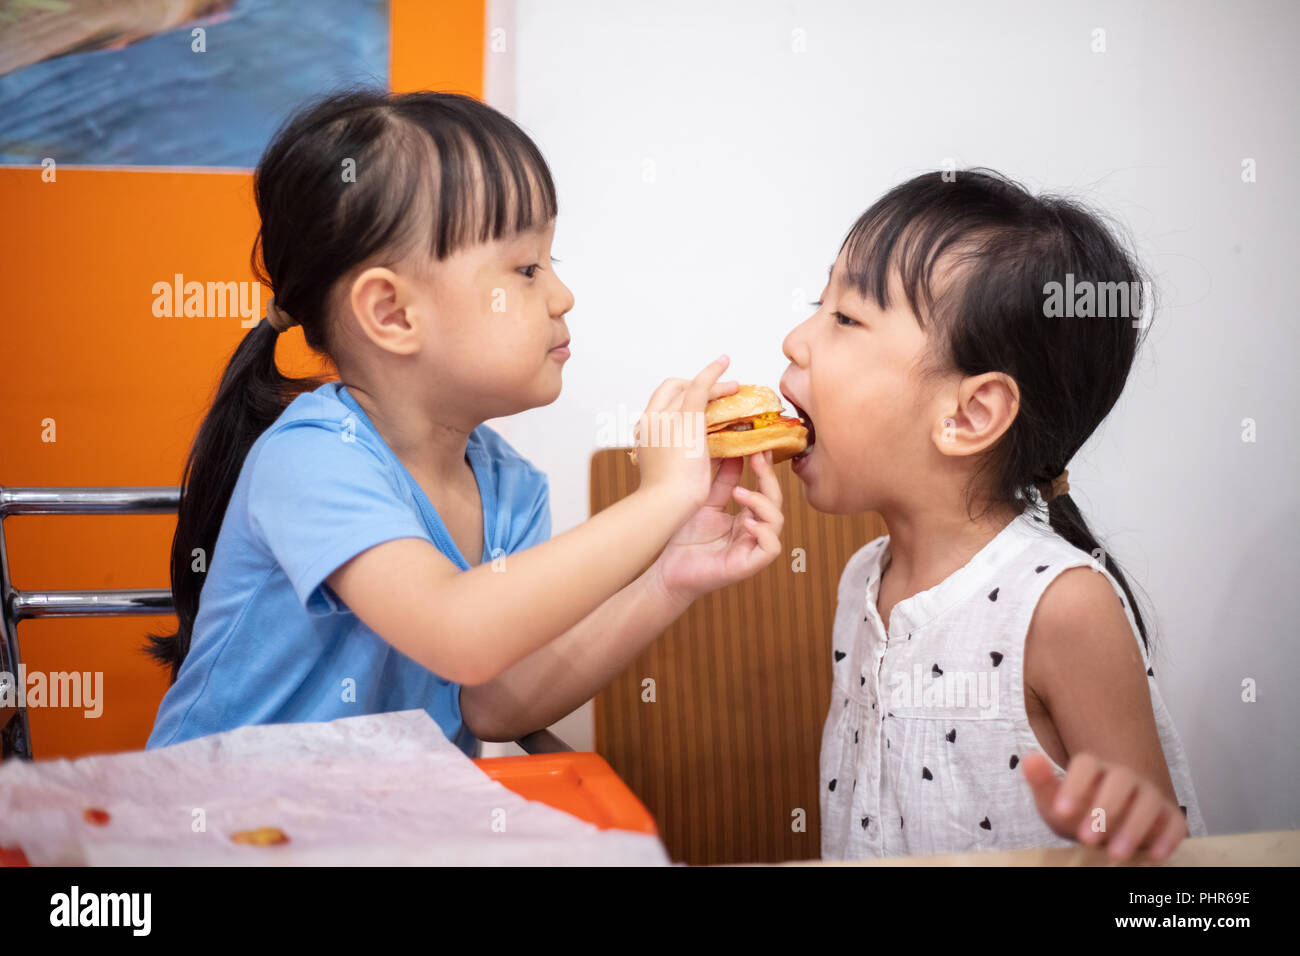 Chinois asiatique petites sœurs burger manger au restaurant de l'intérieur Banque D'Images